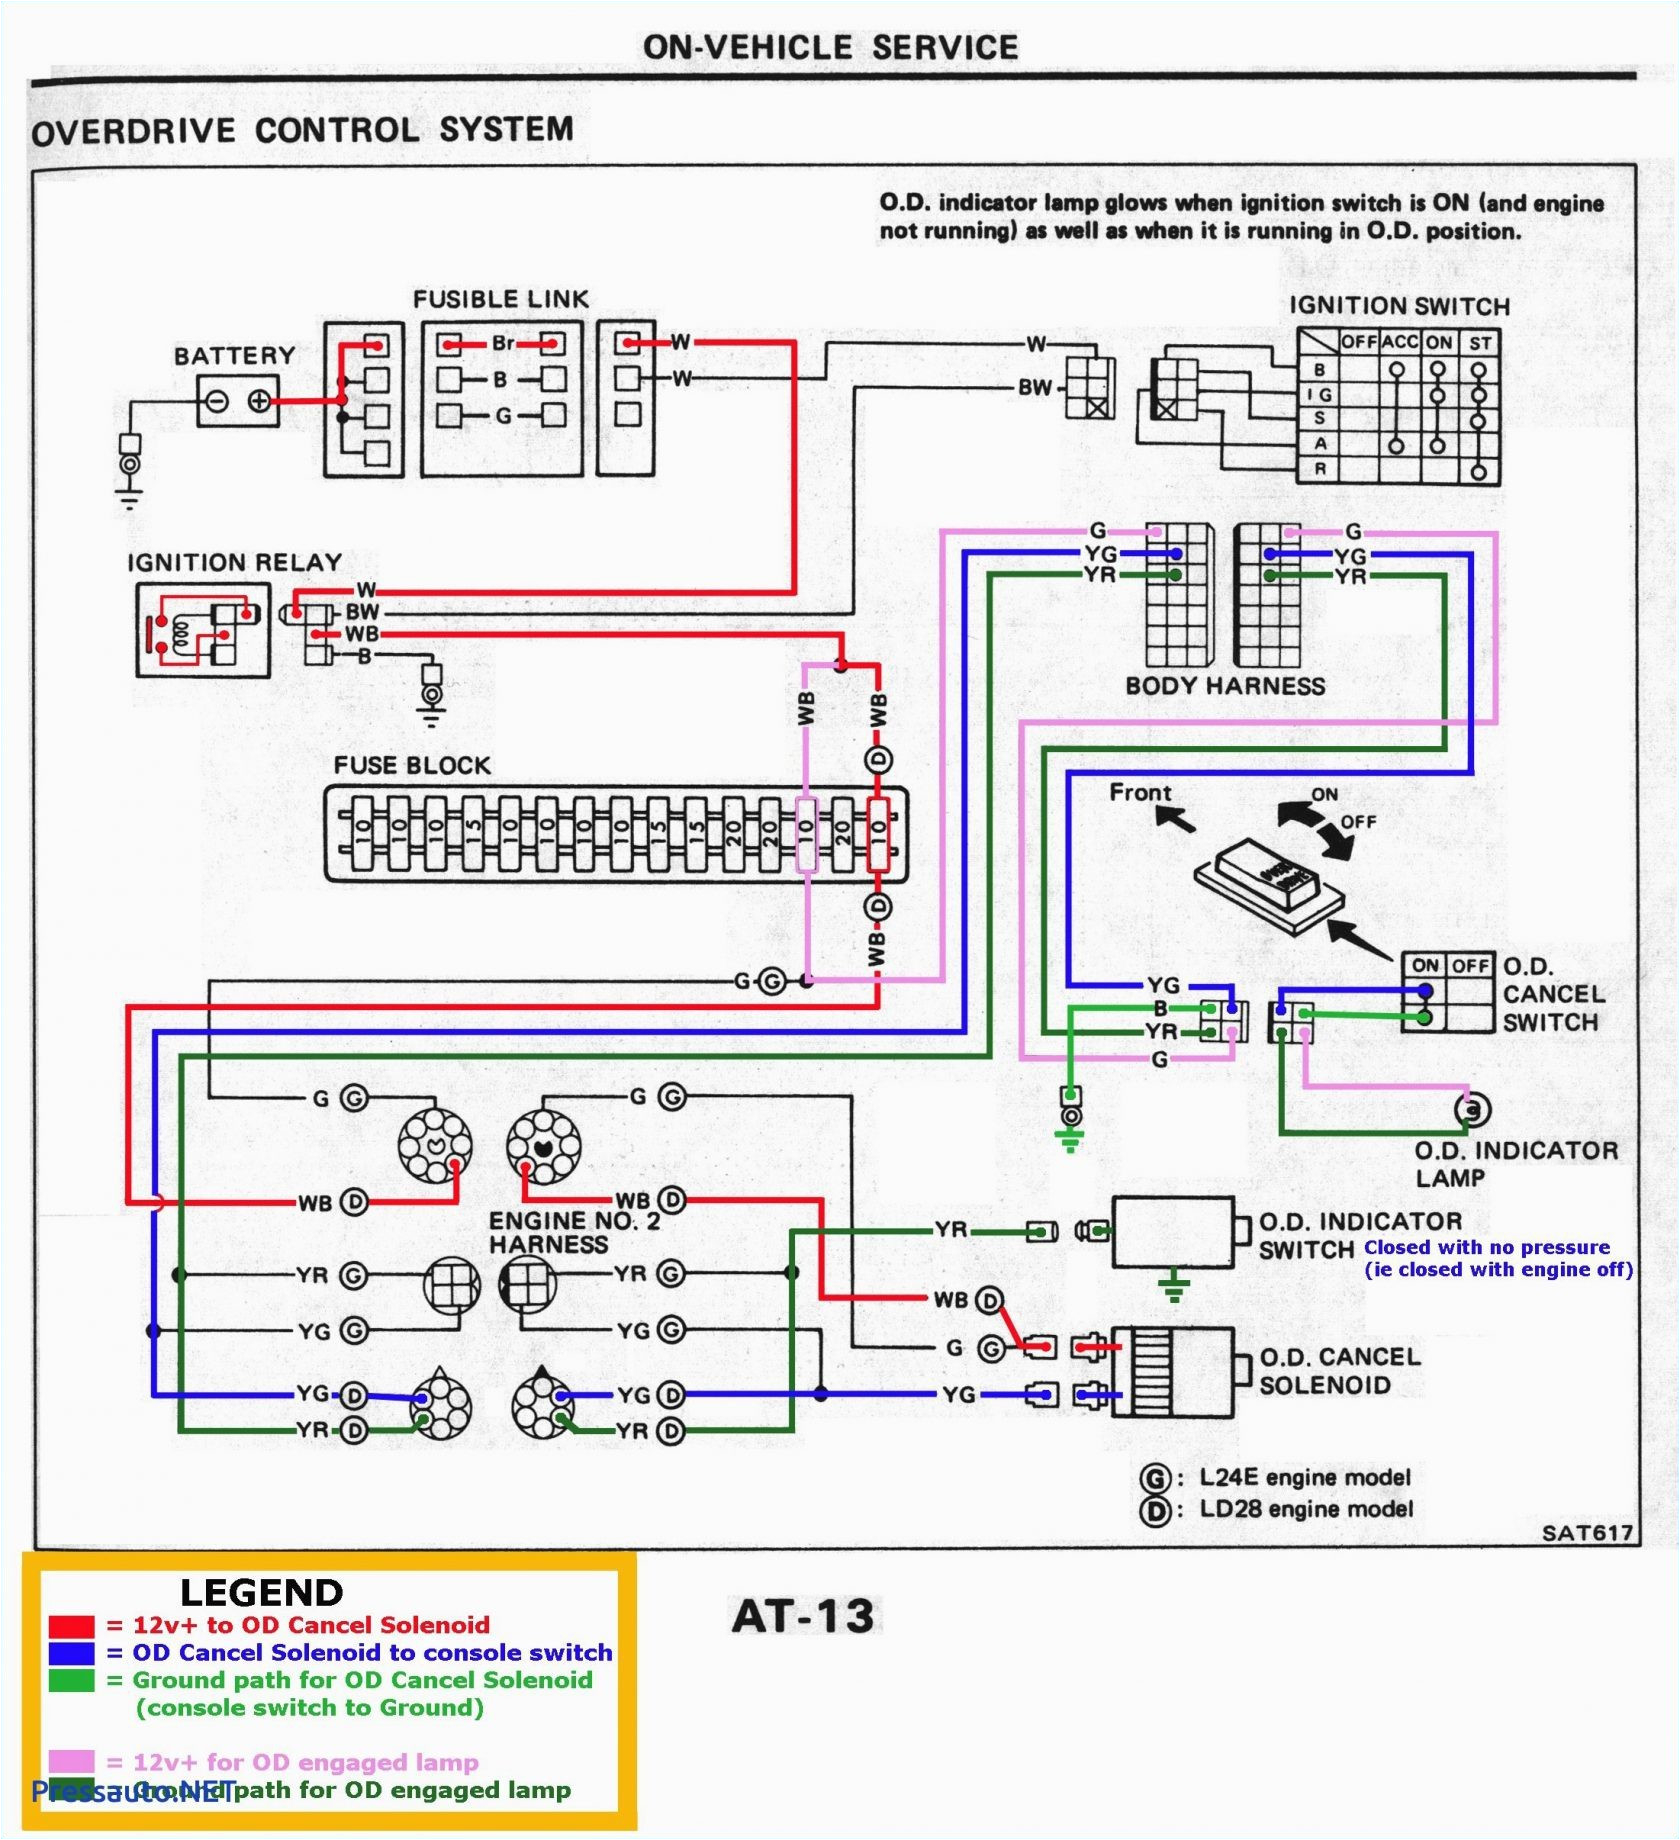 wiring schematic of the turn signal wiringjunction block under dash wiring diagram show